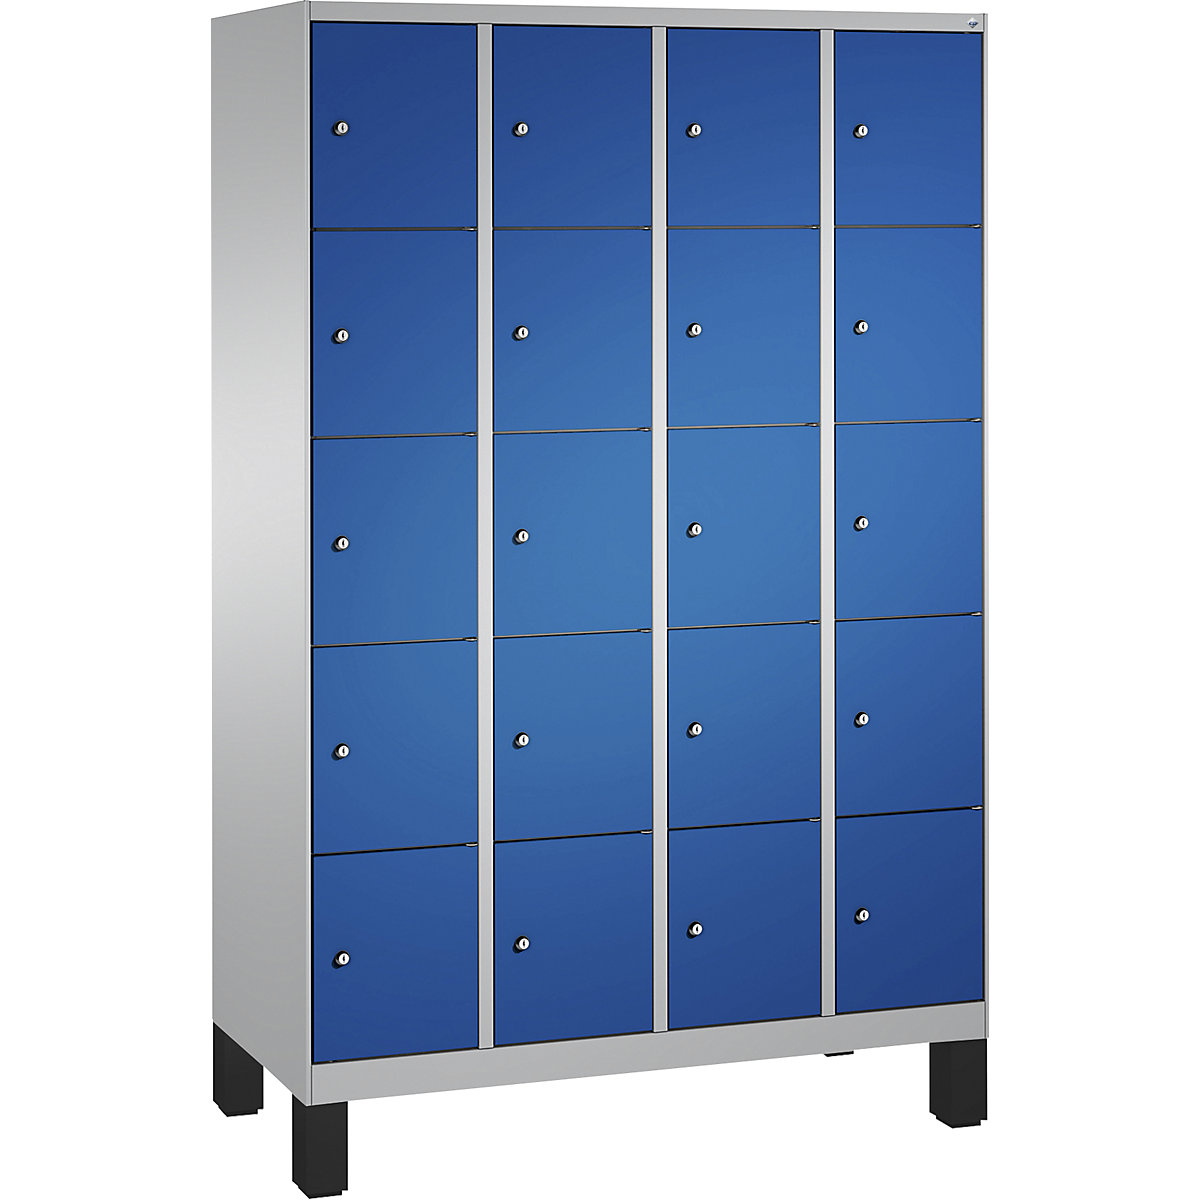 Armoire à casiers sur pieds EVOLO – C+P, 4 compartiments, 5 casiers chacun, largeur compartiments 300 mm, aluminium / bleu gentiane-12